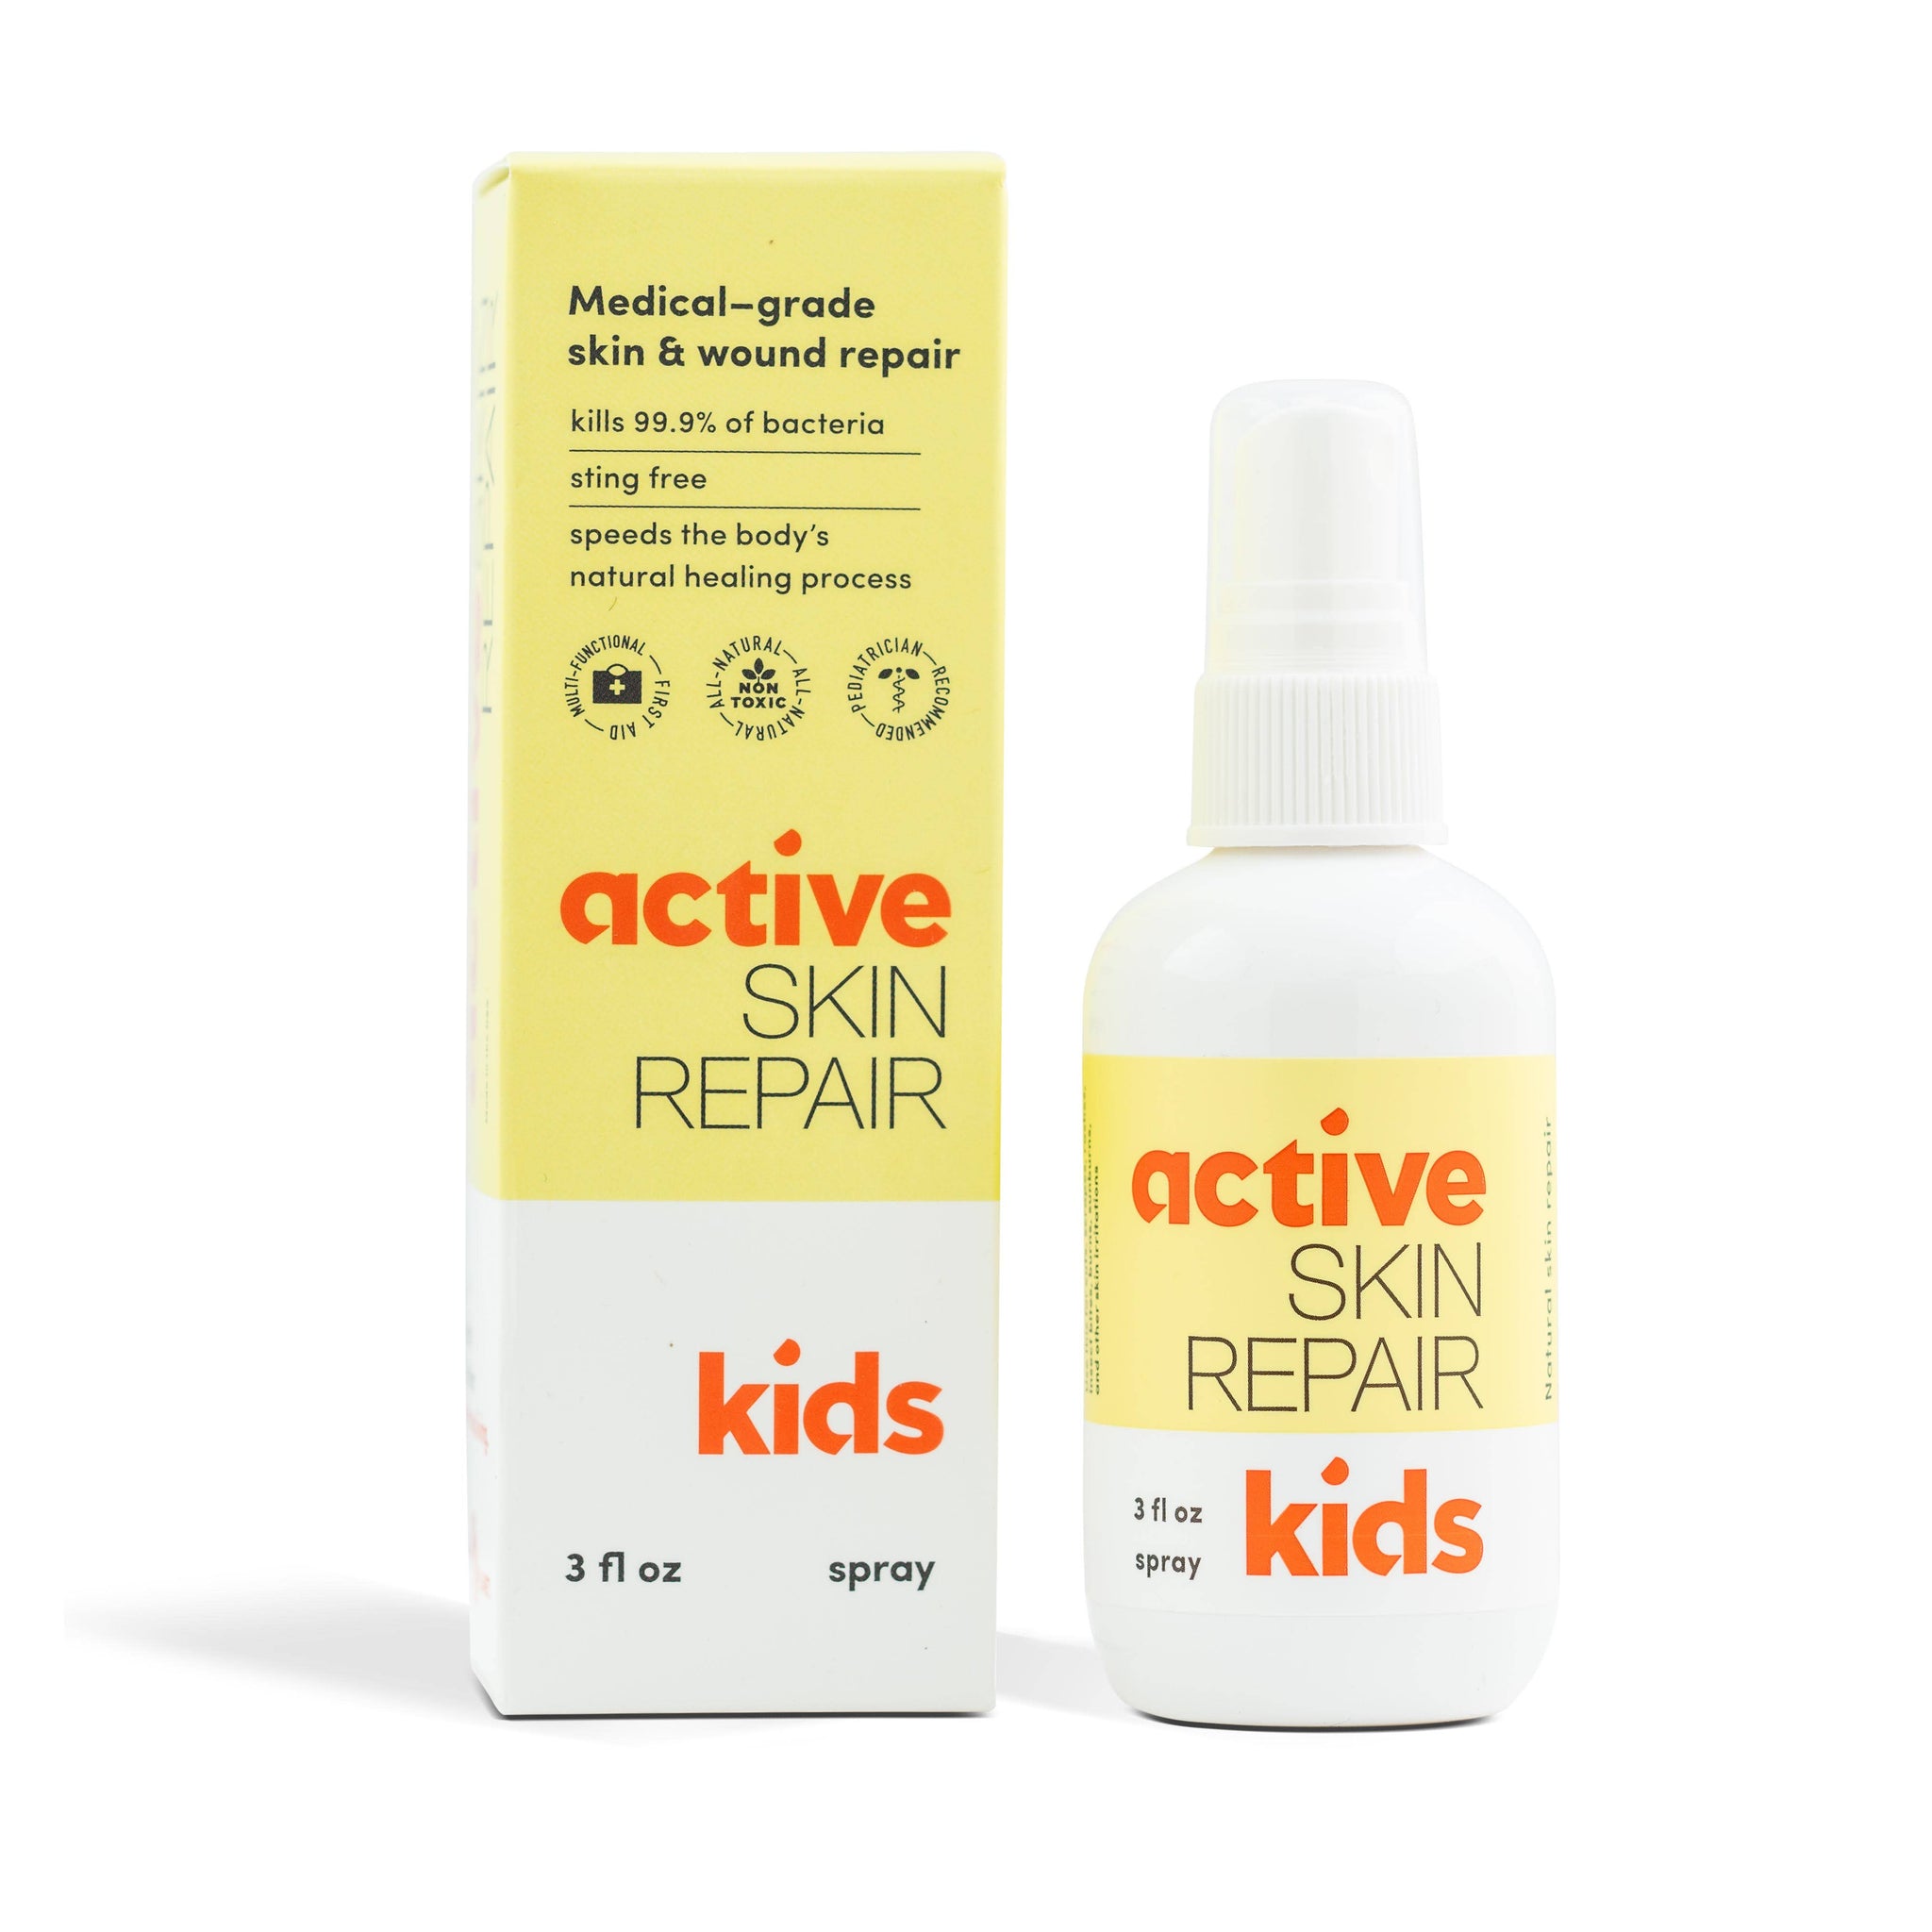 Active Skin Repair - Active Skin Repair Kids Spray    